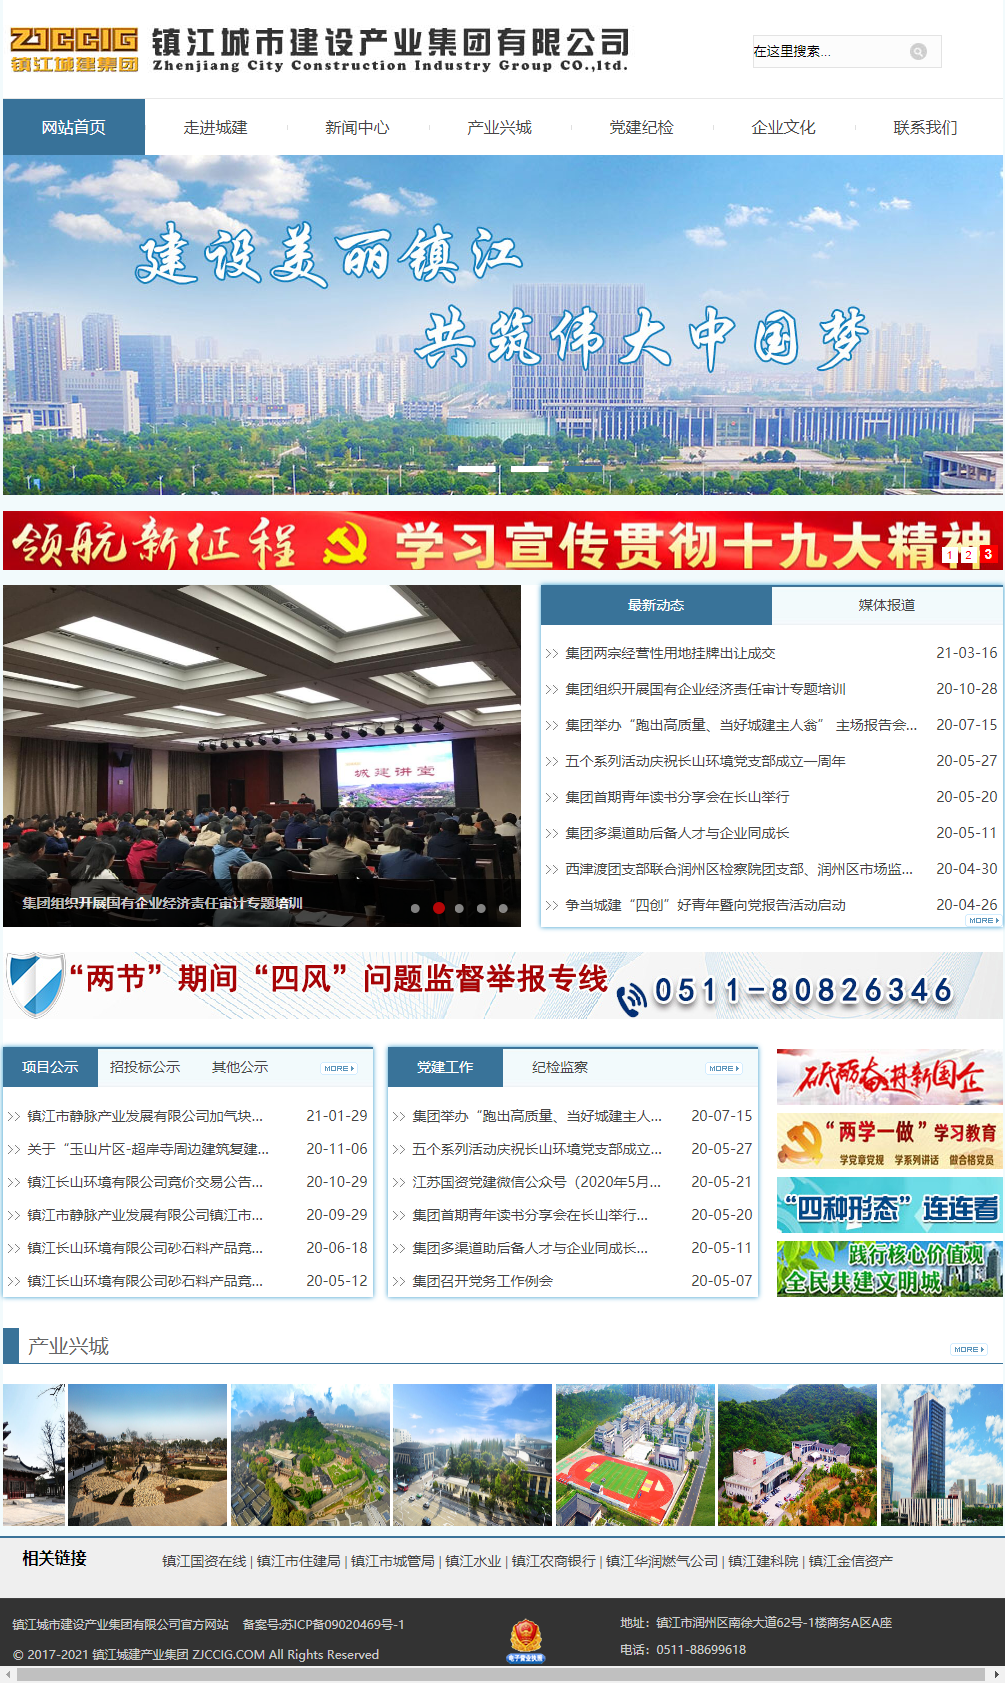 镇江城市建设产业集团有限公司网站案例